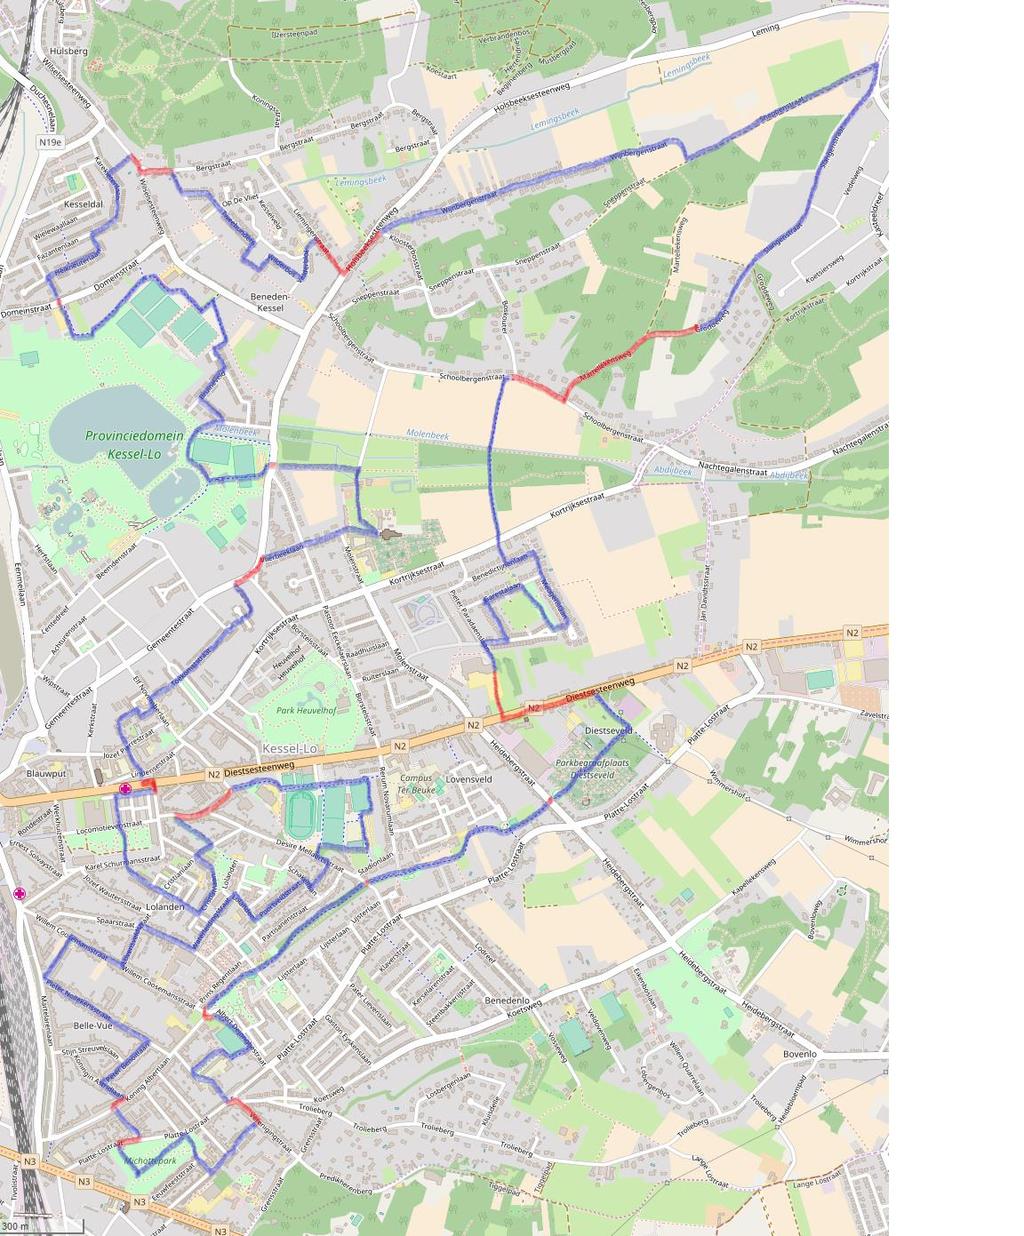 Overzichtskaart volledige route Er is ook nog gps-track, gemaakt met gpsies op een osm-map, voor degene die daar mee vertrouwd zijn.